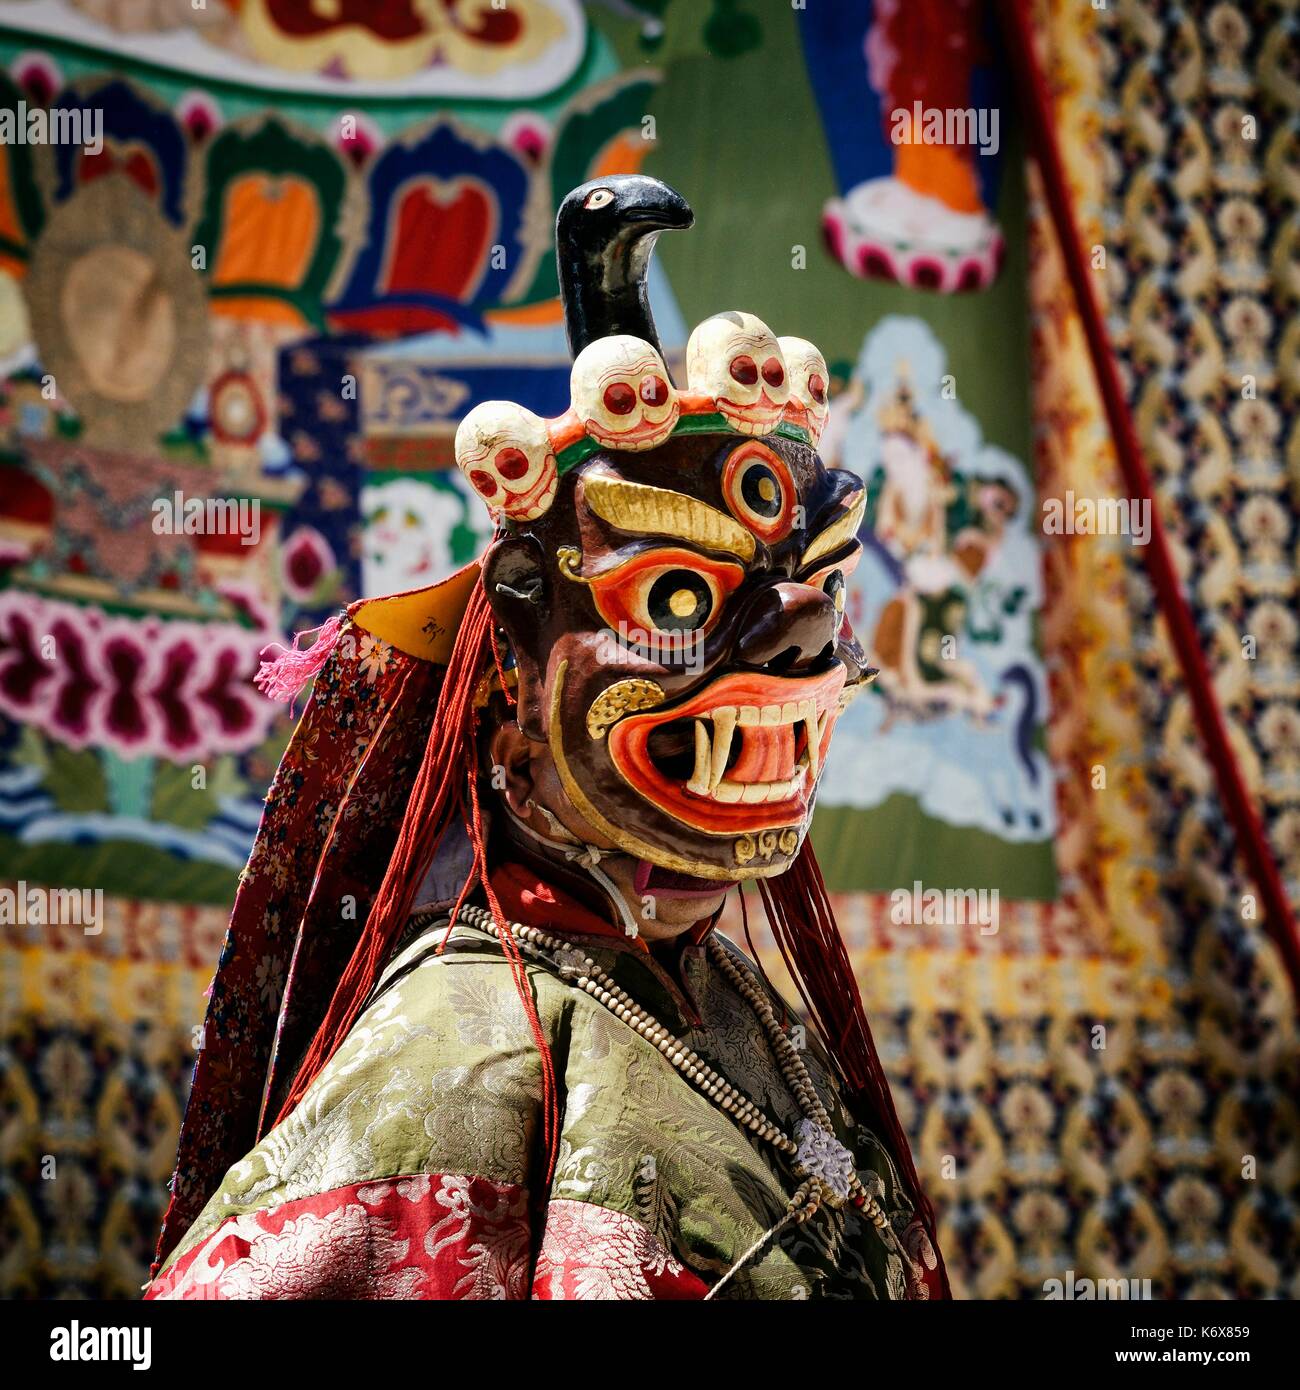 India, dello Stato del Jammu e Kashmir, Himalaya, Ladakh, Indus Valle, festival presso il monastero buddista di Phyang, maschera sacra danze eseguite da monaci Foto Stock